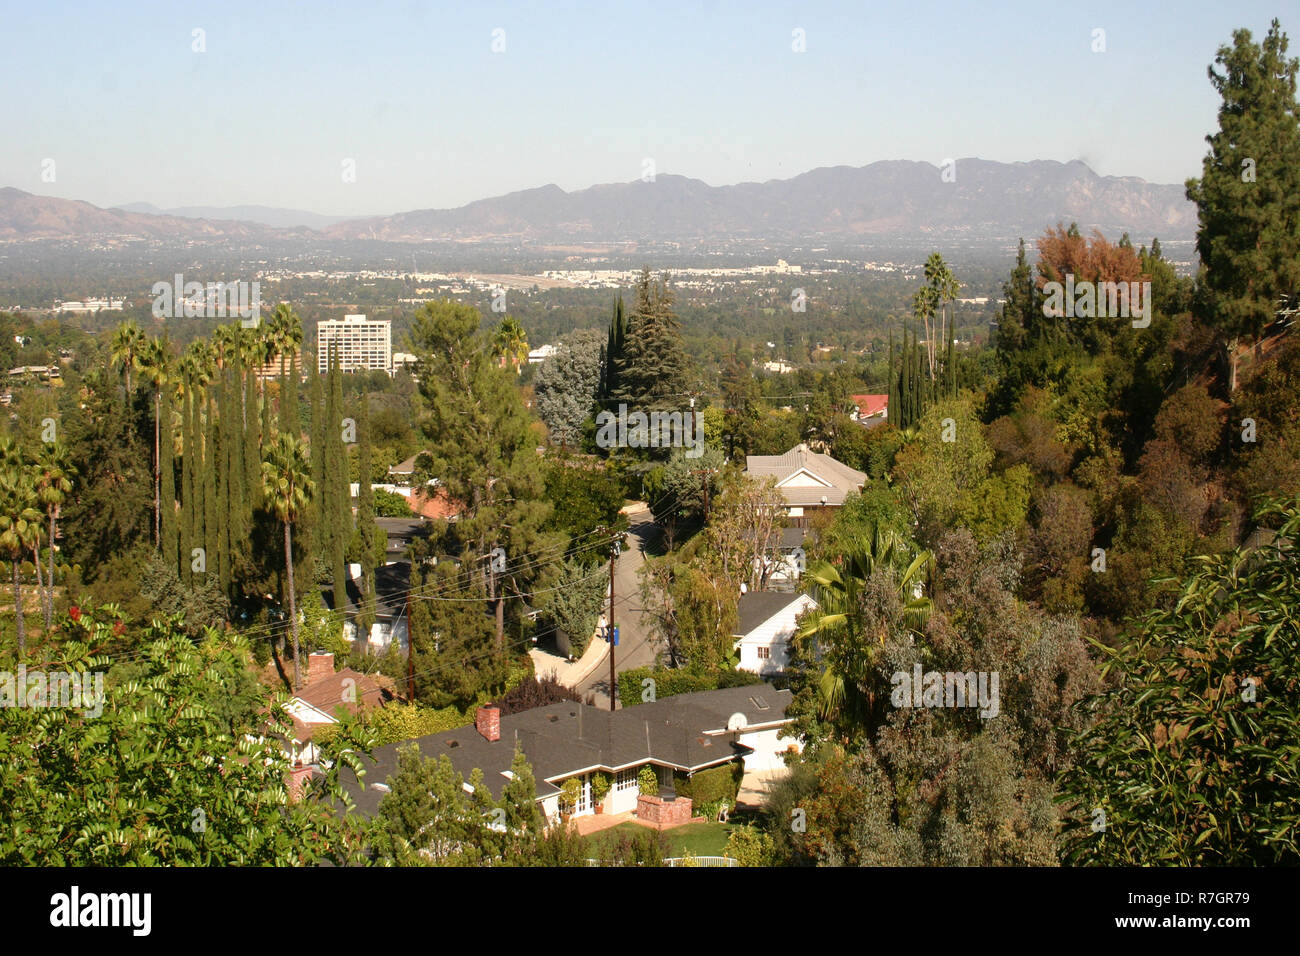 View over Encino, L.A., California, USA Stock Photo